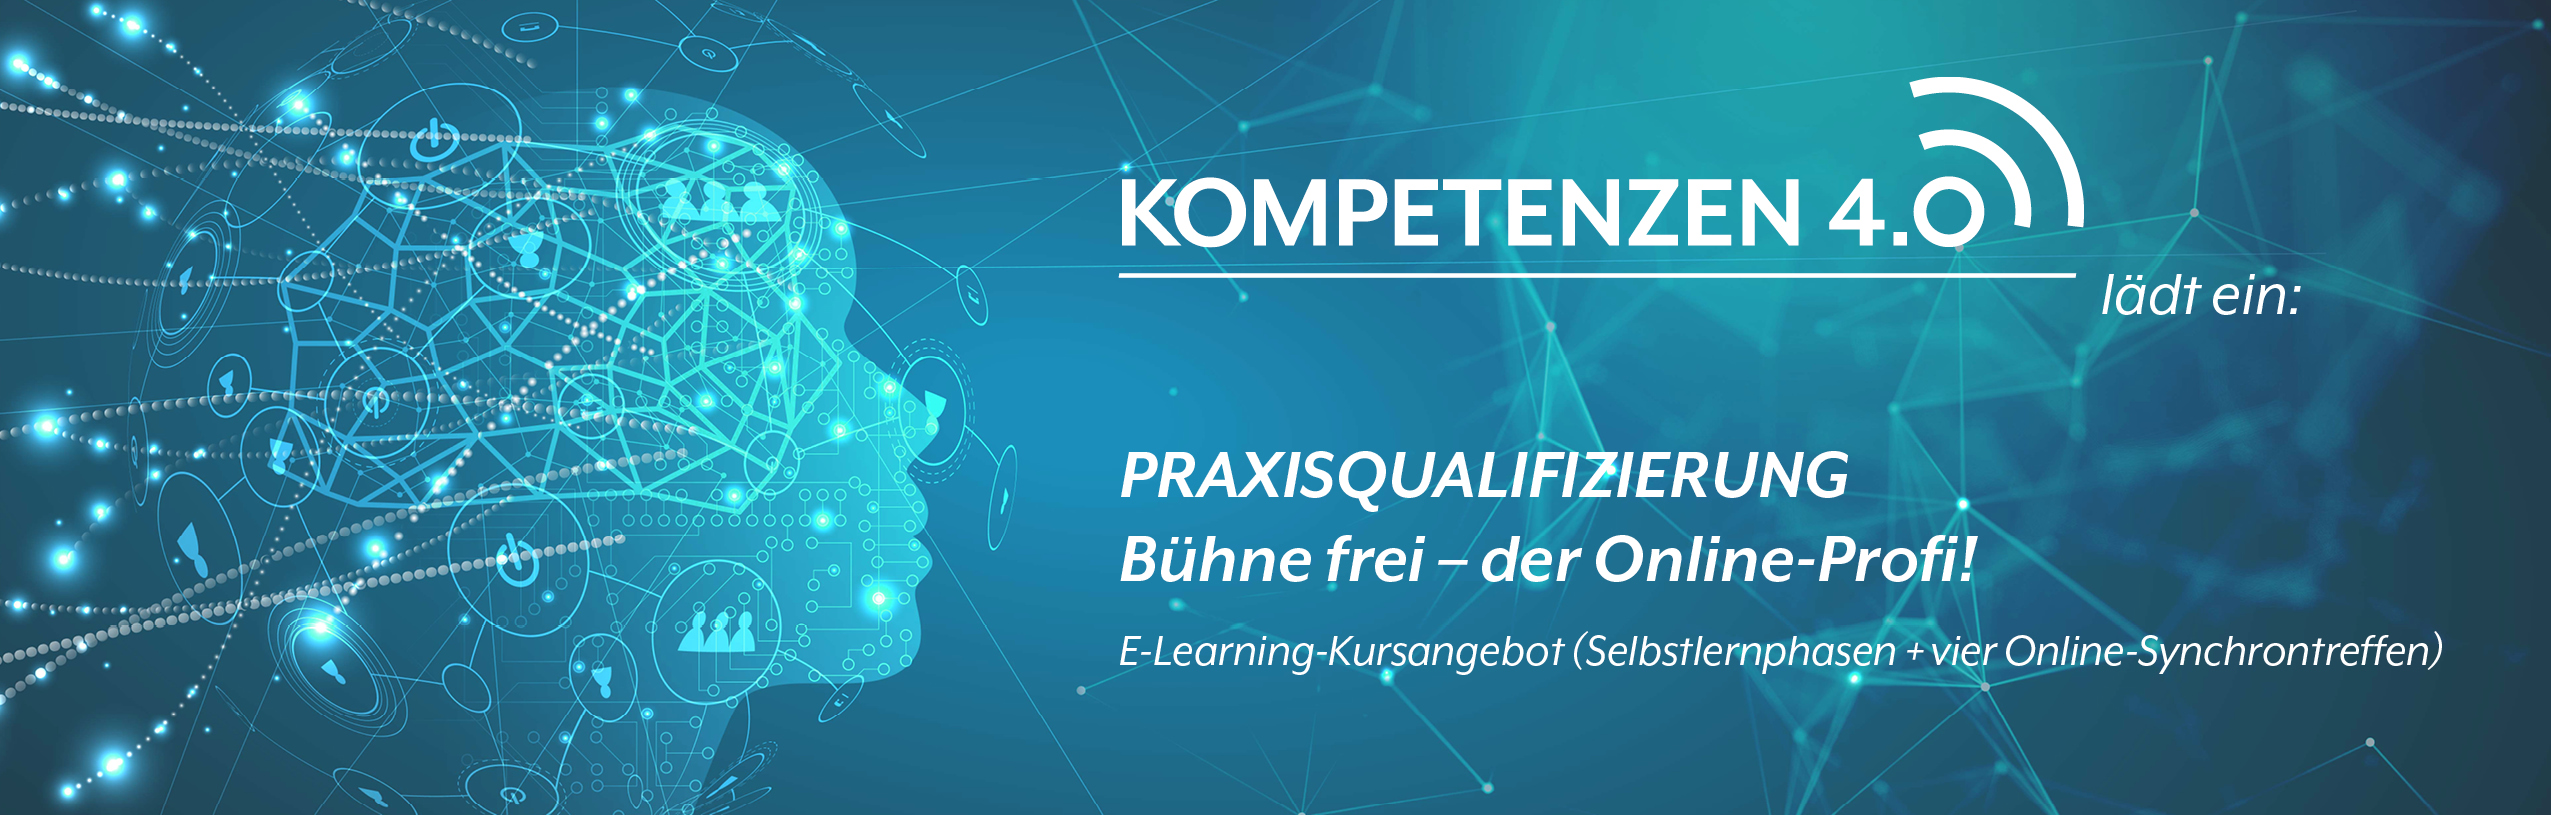 Praxisqualifizierung: Bühne frei – der Online-Profi!